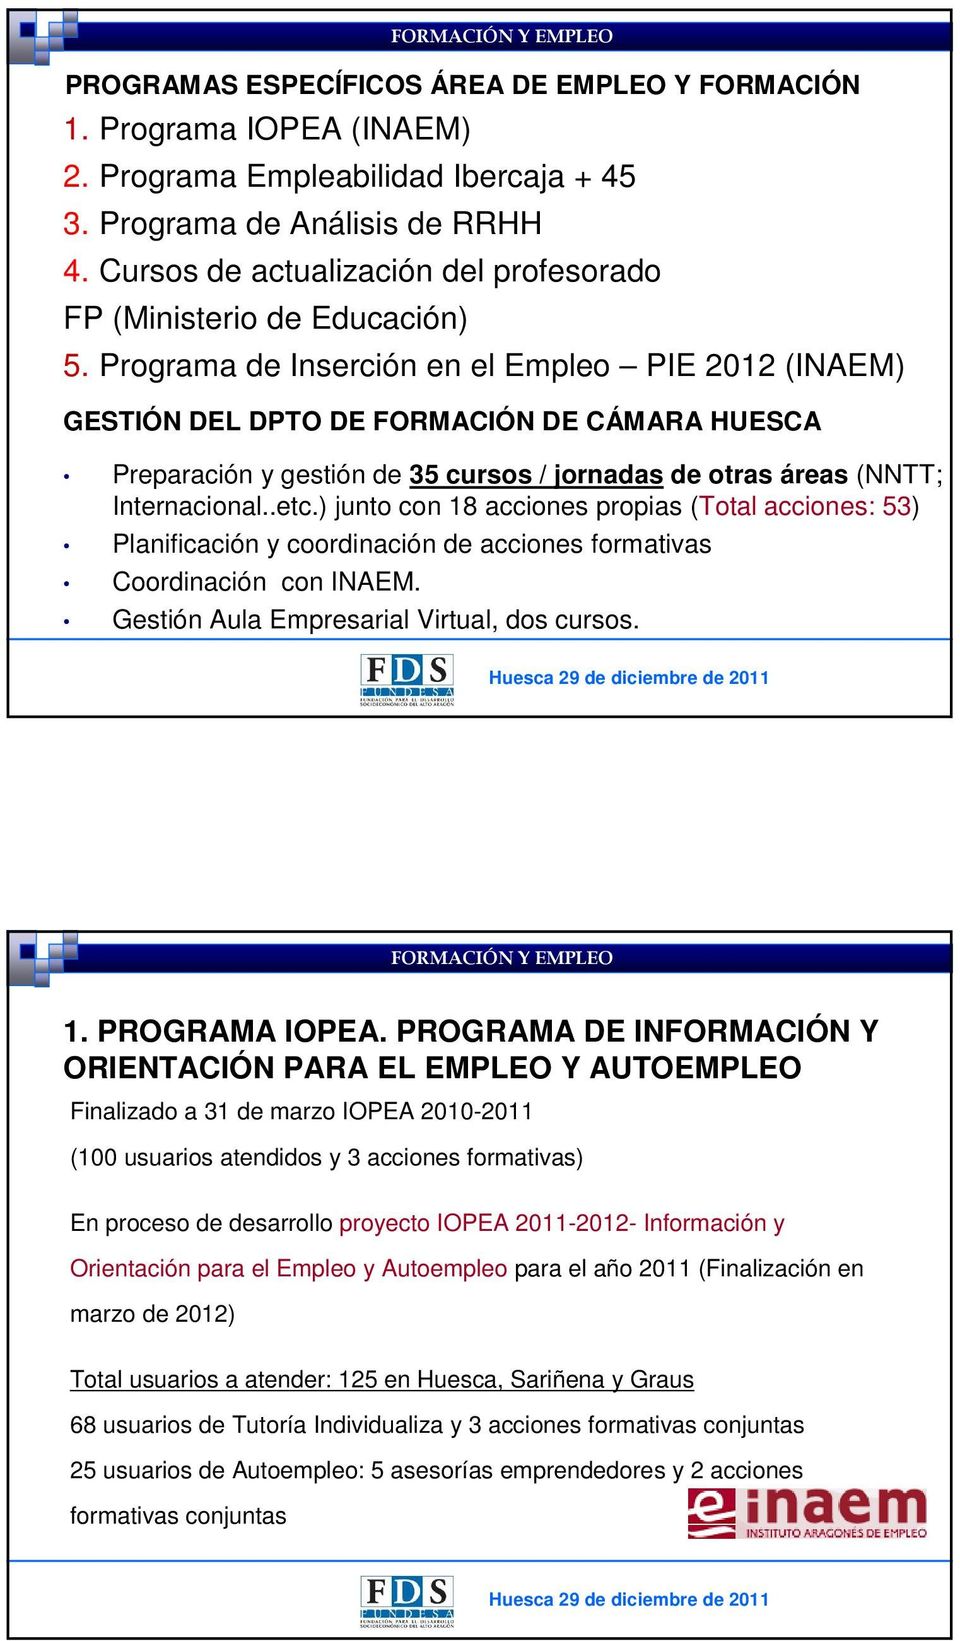 Programa de Inserción en el Empleo PIE 2012 (INAEM) GESTIÓN DEL DPTO DE FORMACIÓN DE CÁMARA HUESCA Preparación y gestión de 35 cursos / jornadas de otras áreas (NNTT; Internacional..etc.